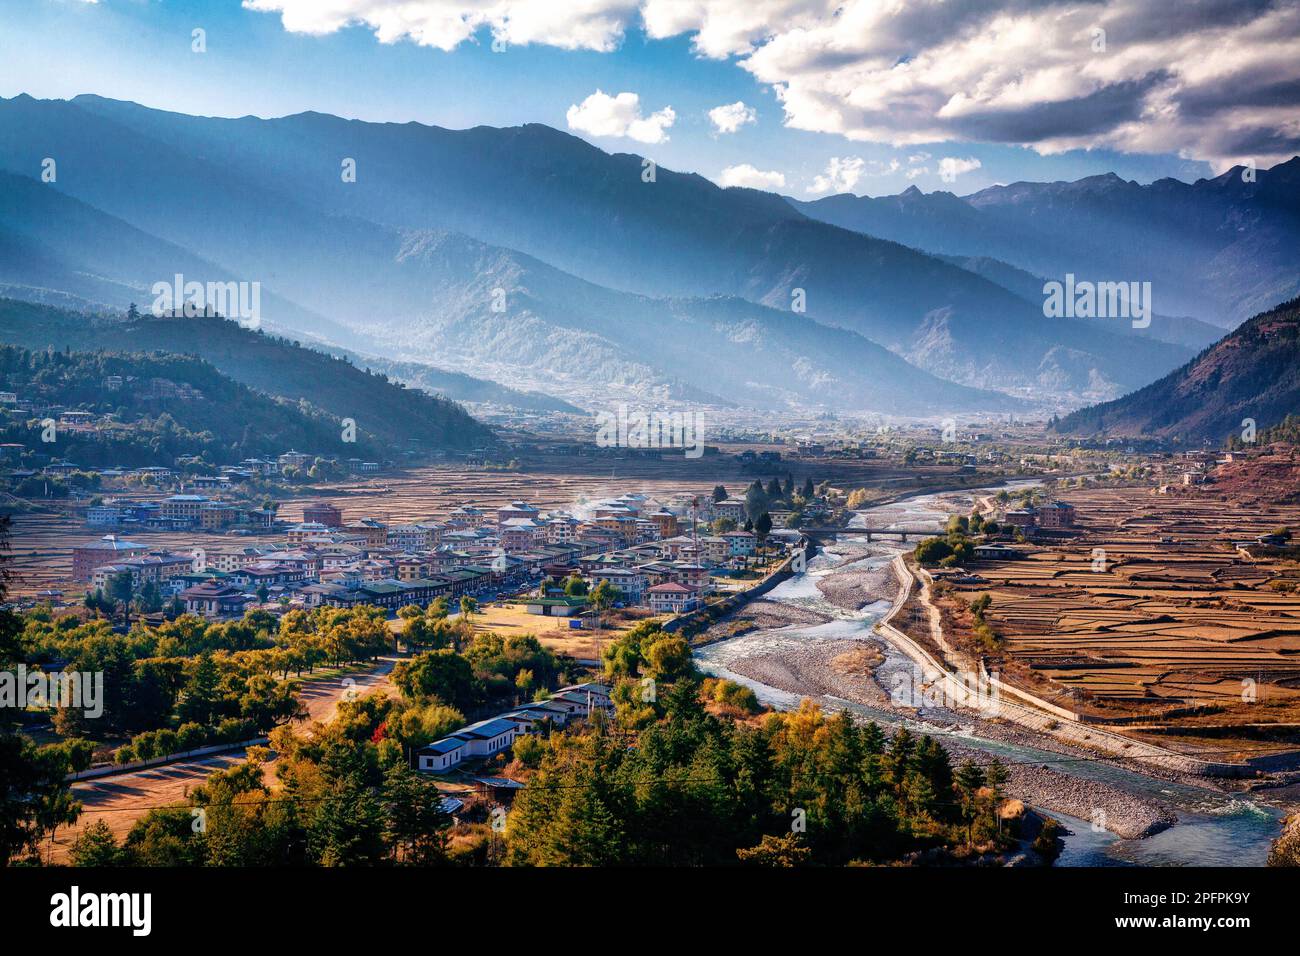 La ville de Paro et la vallée de Paro dans l'ouest du Bhoutan. Banque D'Images